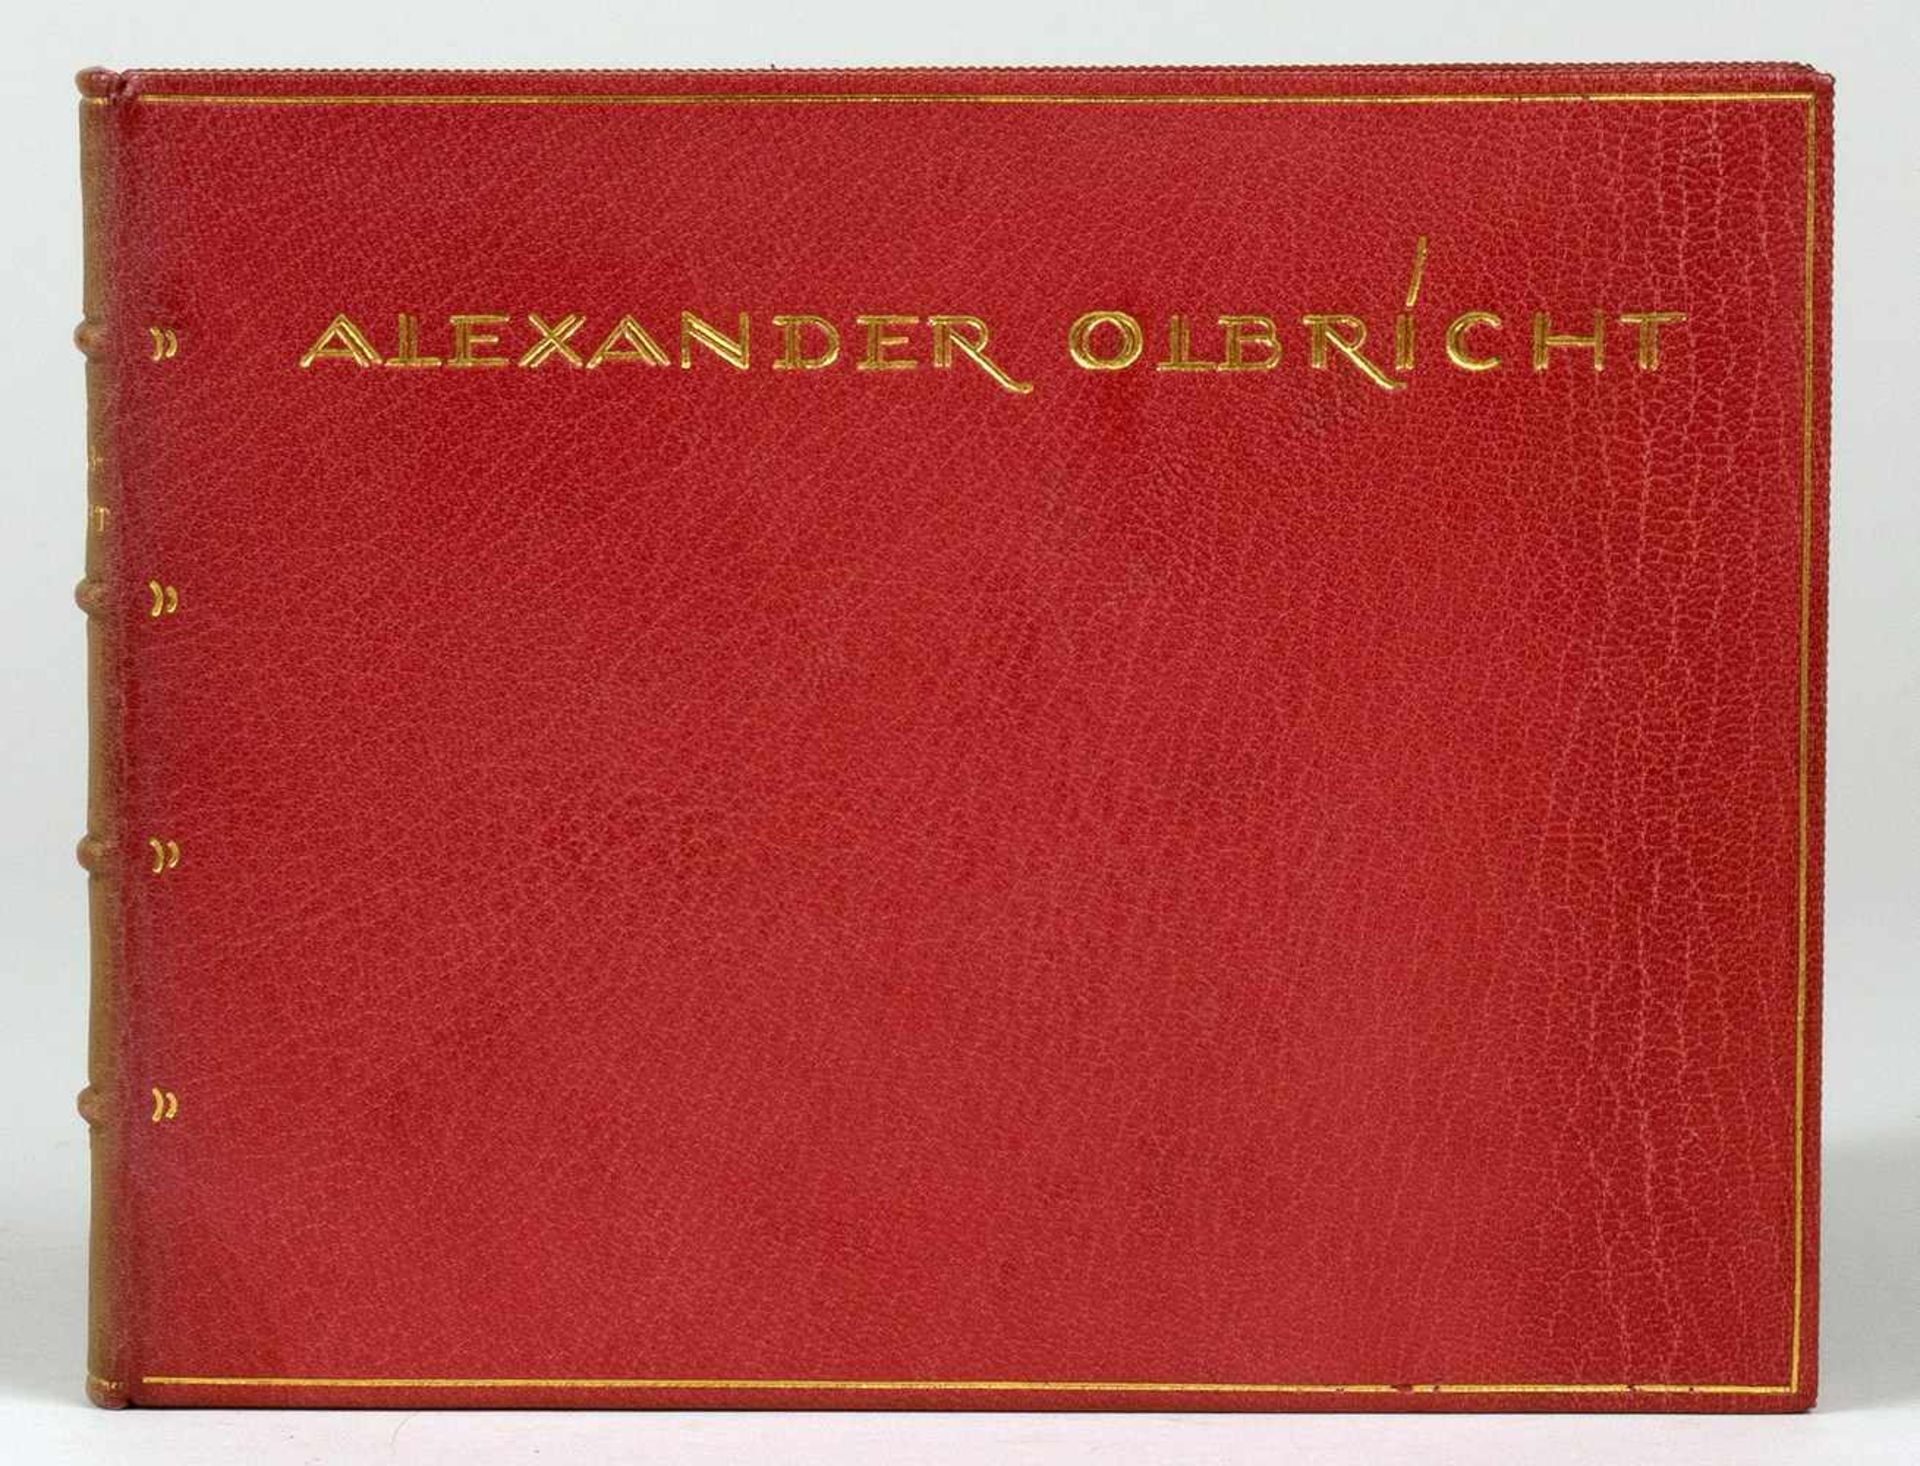 Alexander Olbricht. Dreissig Radierungen. Weimar, Reiher 1923. 30 Radierungen und eine